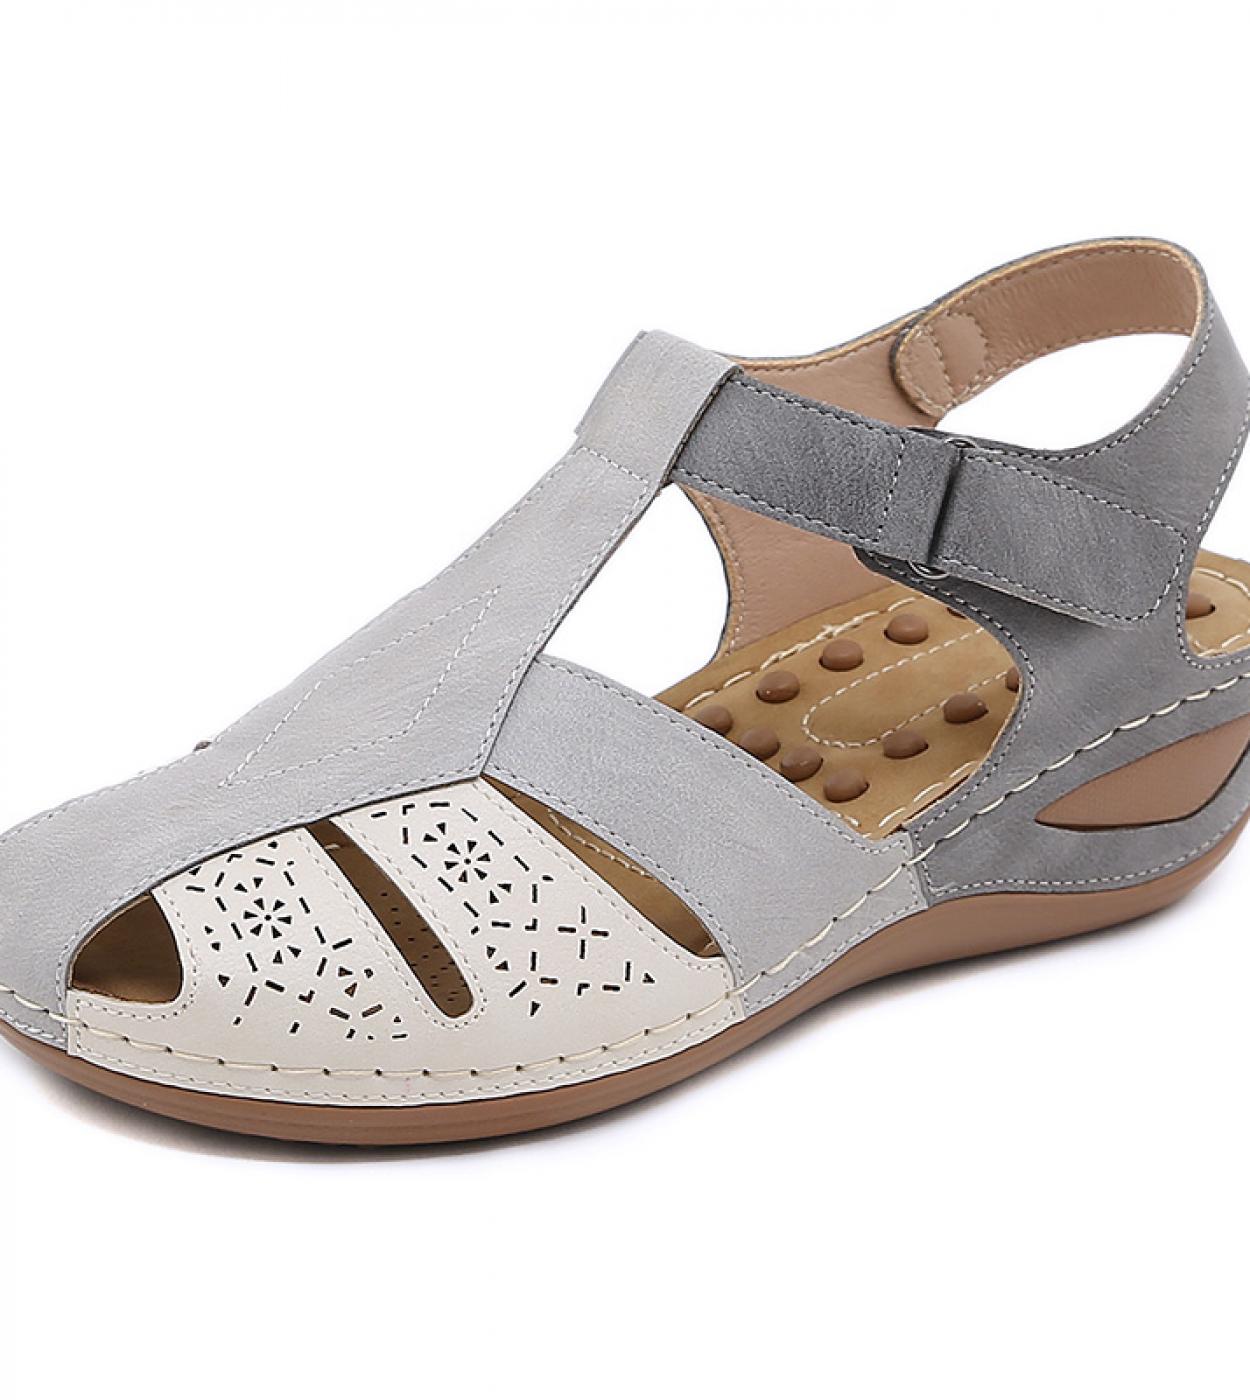 Nouveau 55 cm compensées talons hauts femmes sandales couleurs mélangées plate-forme sandales chaussures dété pour femmes déco